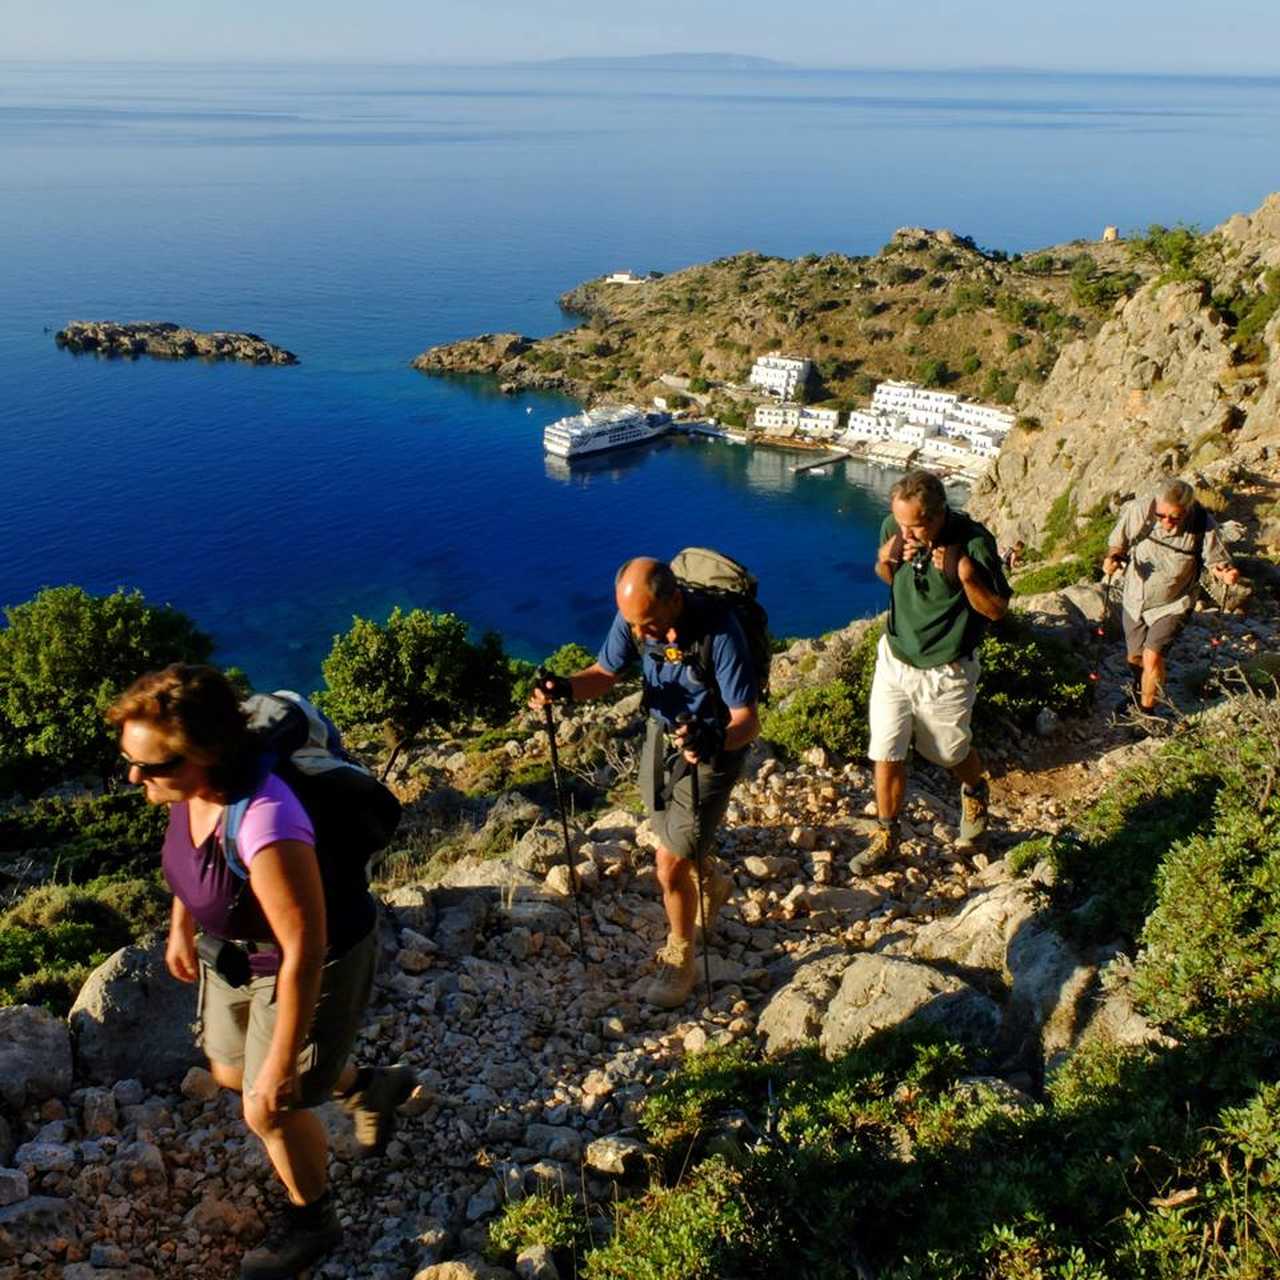 Randonneurs sur un sentier surplombant la mer en Crète